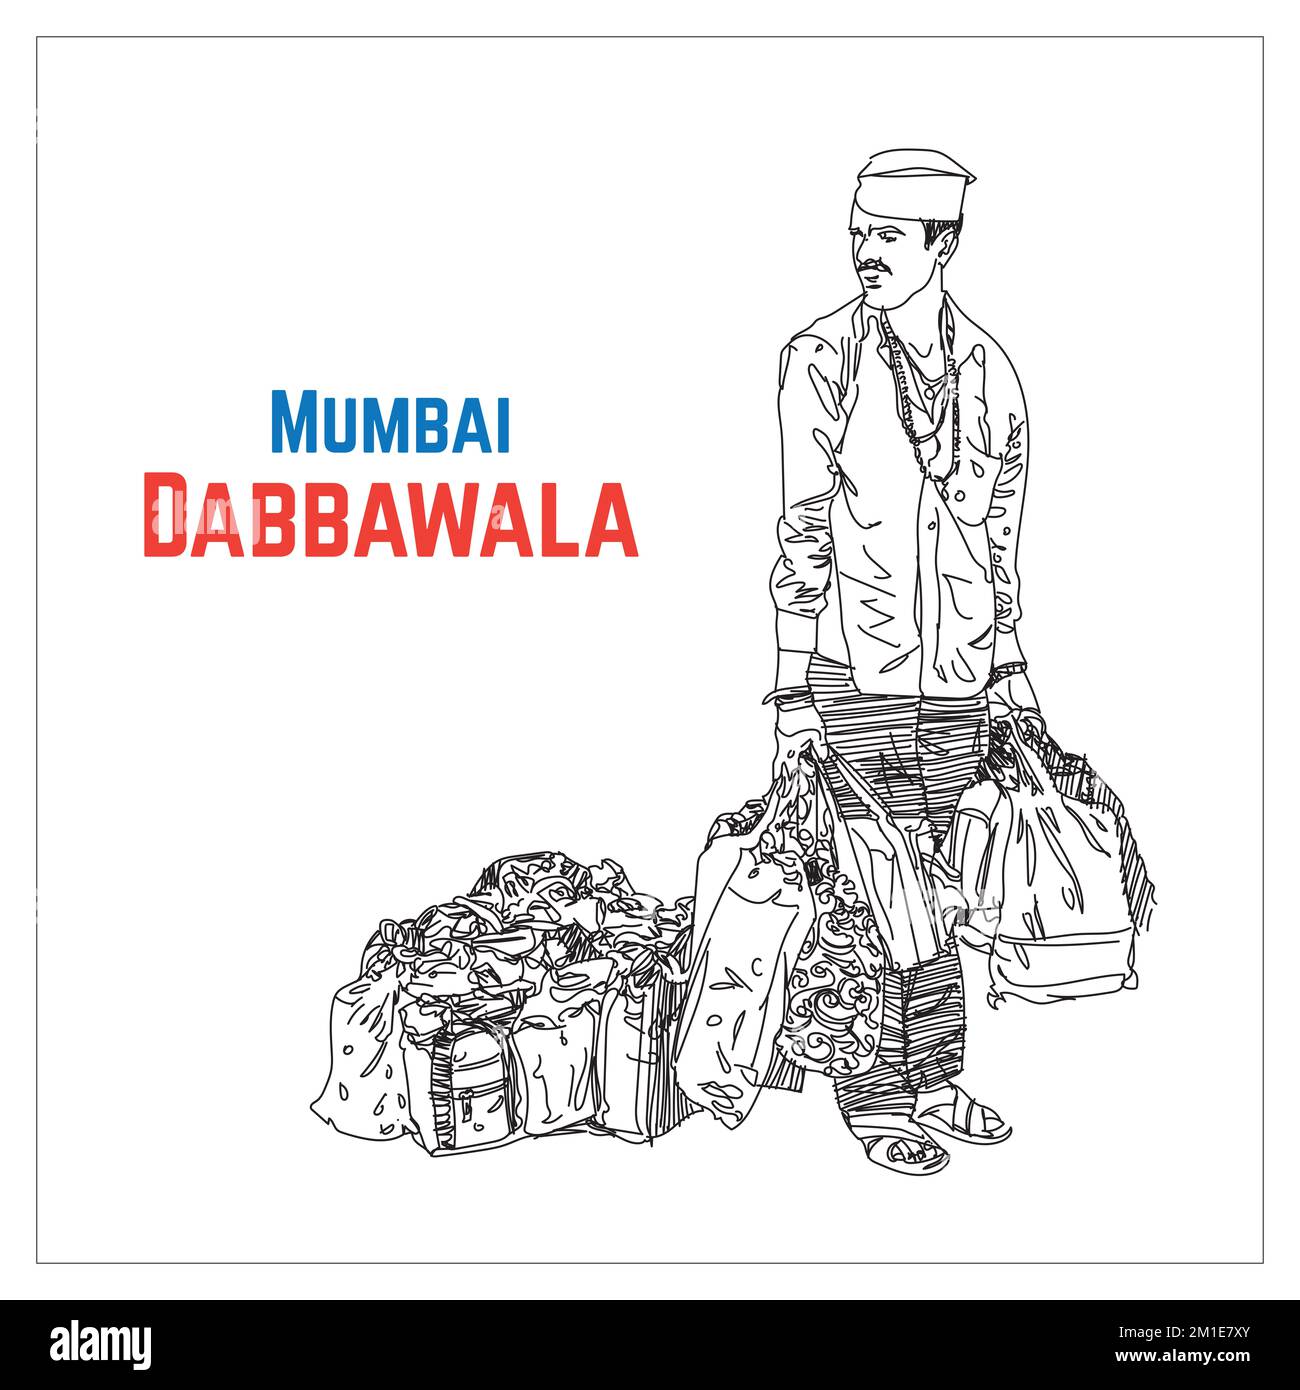 Servizio Dabbawala a Mumbai. Dabbawala con illustrazione della bicicletta, il famoso servizio pranzo Dabbawala a Churchgate Stazione ferroviaria; Mumbai, India arte Foto Stock